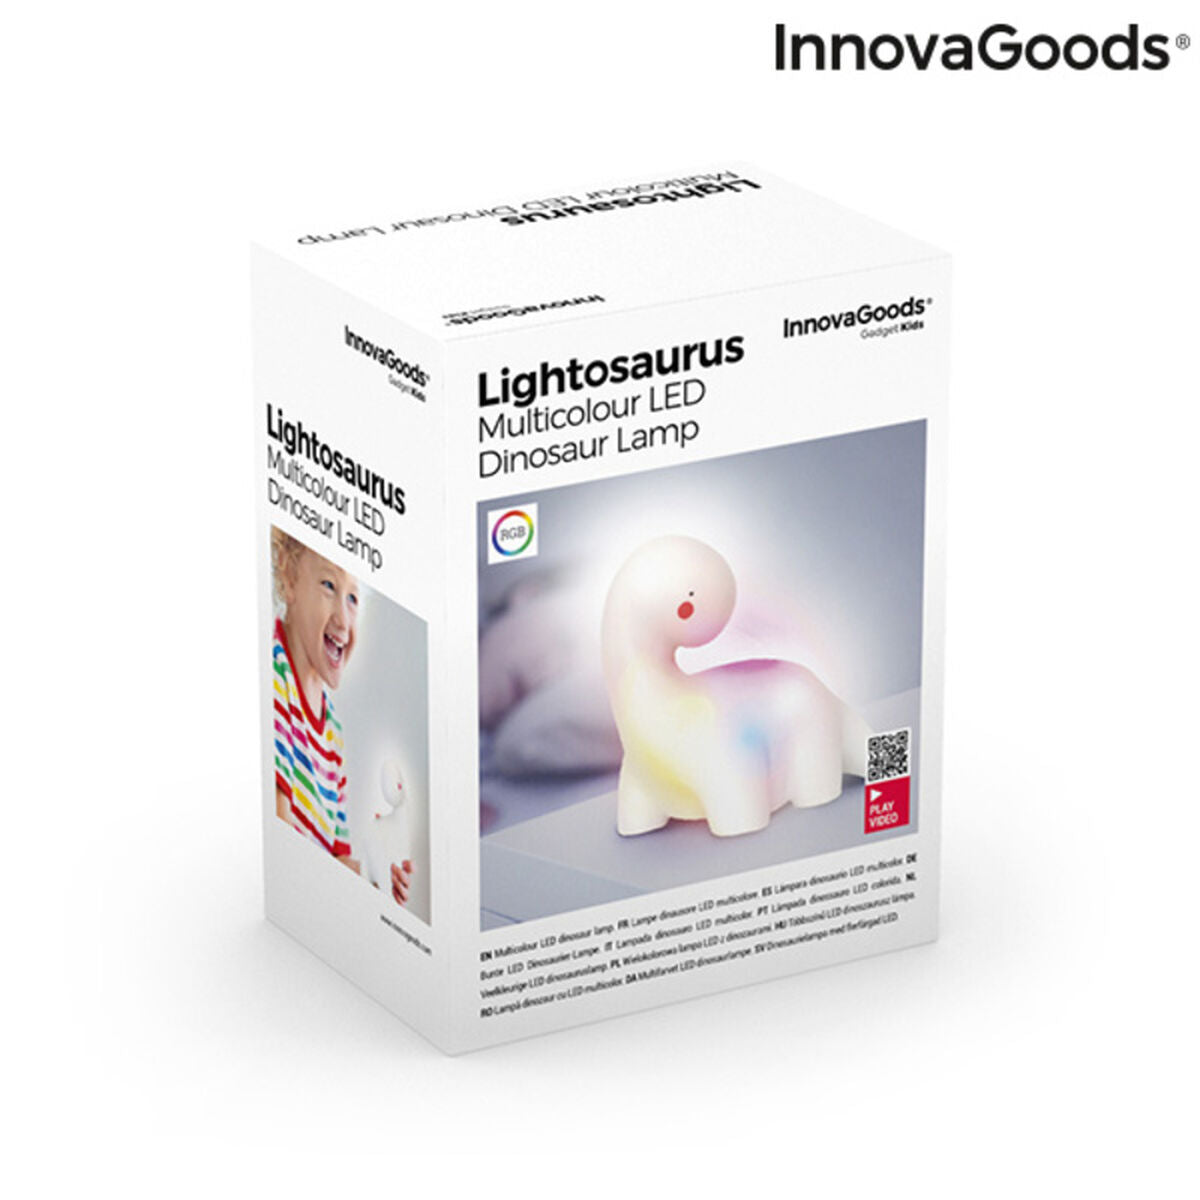 Dinosaur Multicolour LED Lamp Lightosaurus InnovaGoods IG815318 (Refurbished A)